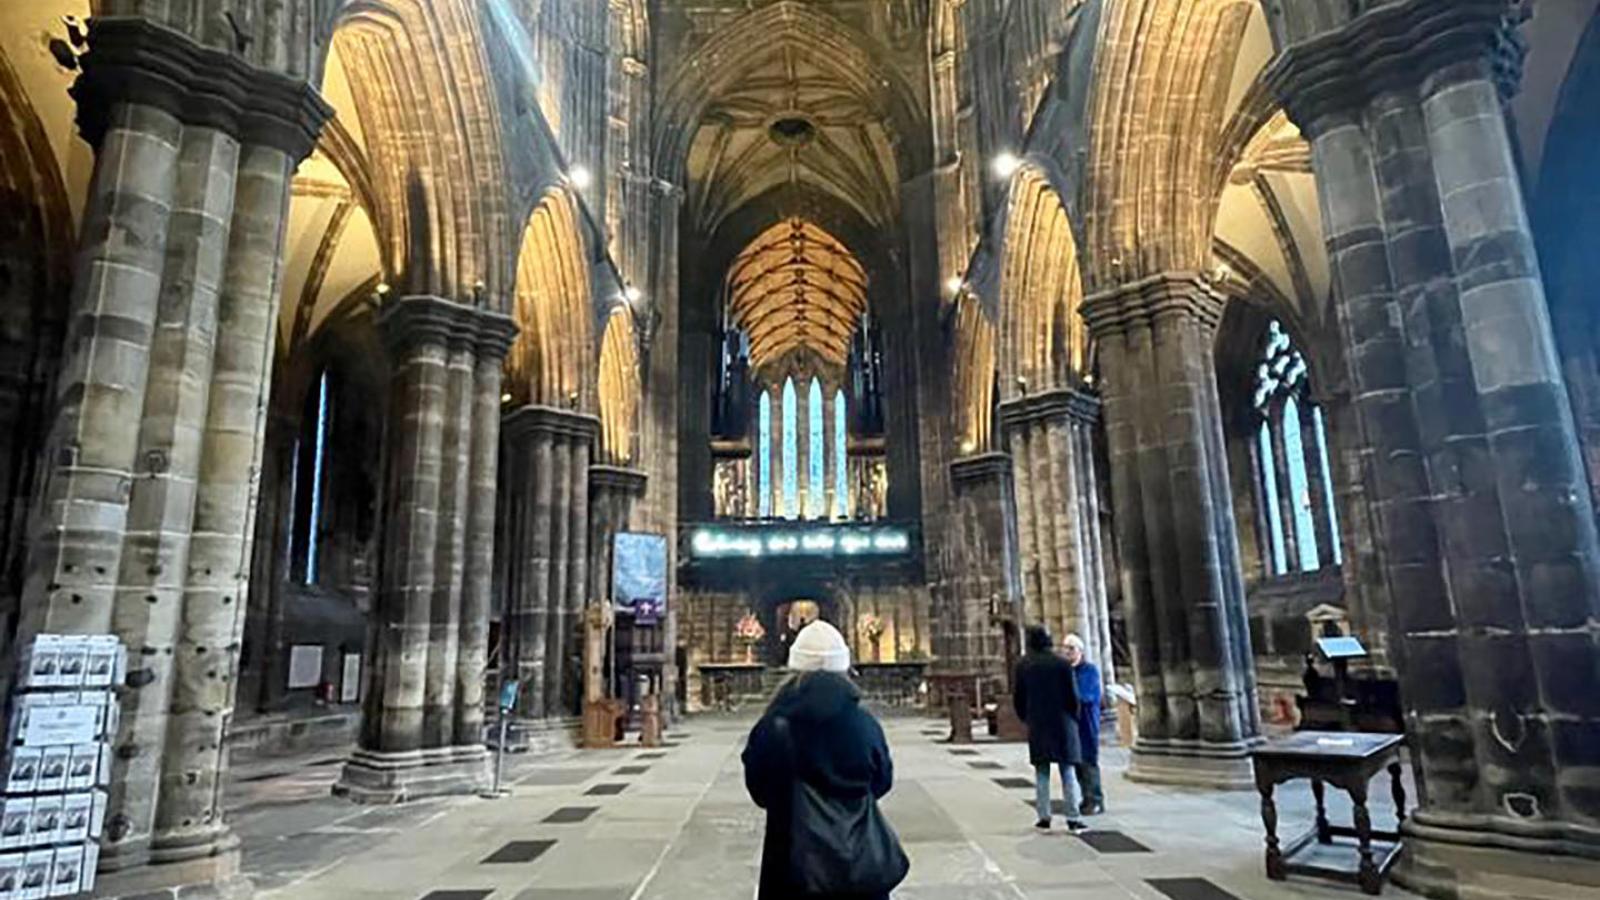 Ein Blick von innen in die Glasgower Kathedrale St. Mungo's Catherdral. Eine Person steht mittig mit dem Rücken zur Kamera. Der Raum ist Dunkel aber die Torbogen sind von unten beleuchtet.